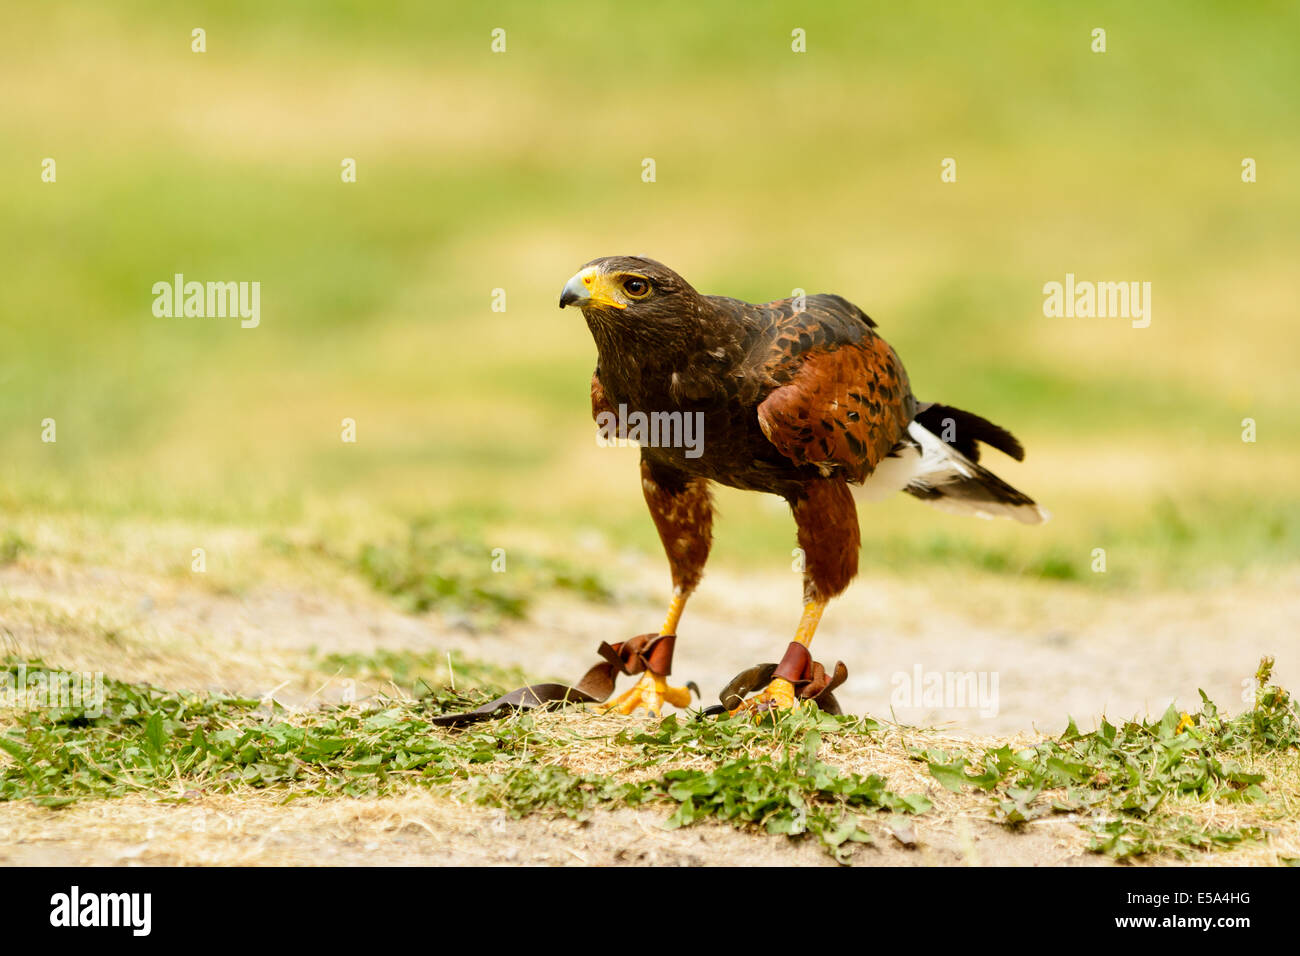 Harris hawk, Parabuteo Unicinctus, auf dem Boden. Dieser Raubvogel ist auch bekannt als Bucht-winged oder Altrosa Hawk. Stockfoto